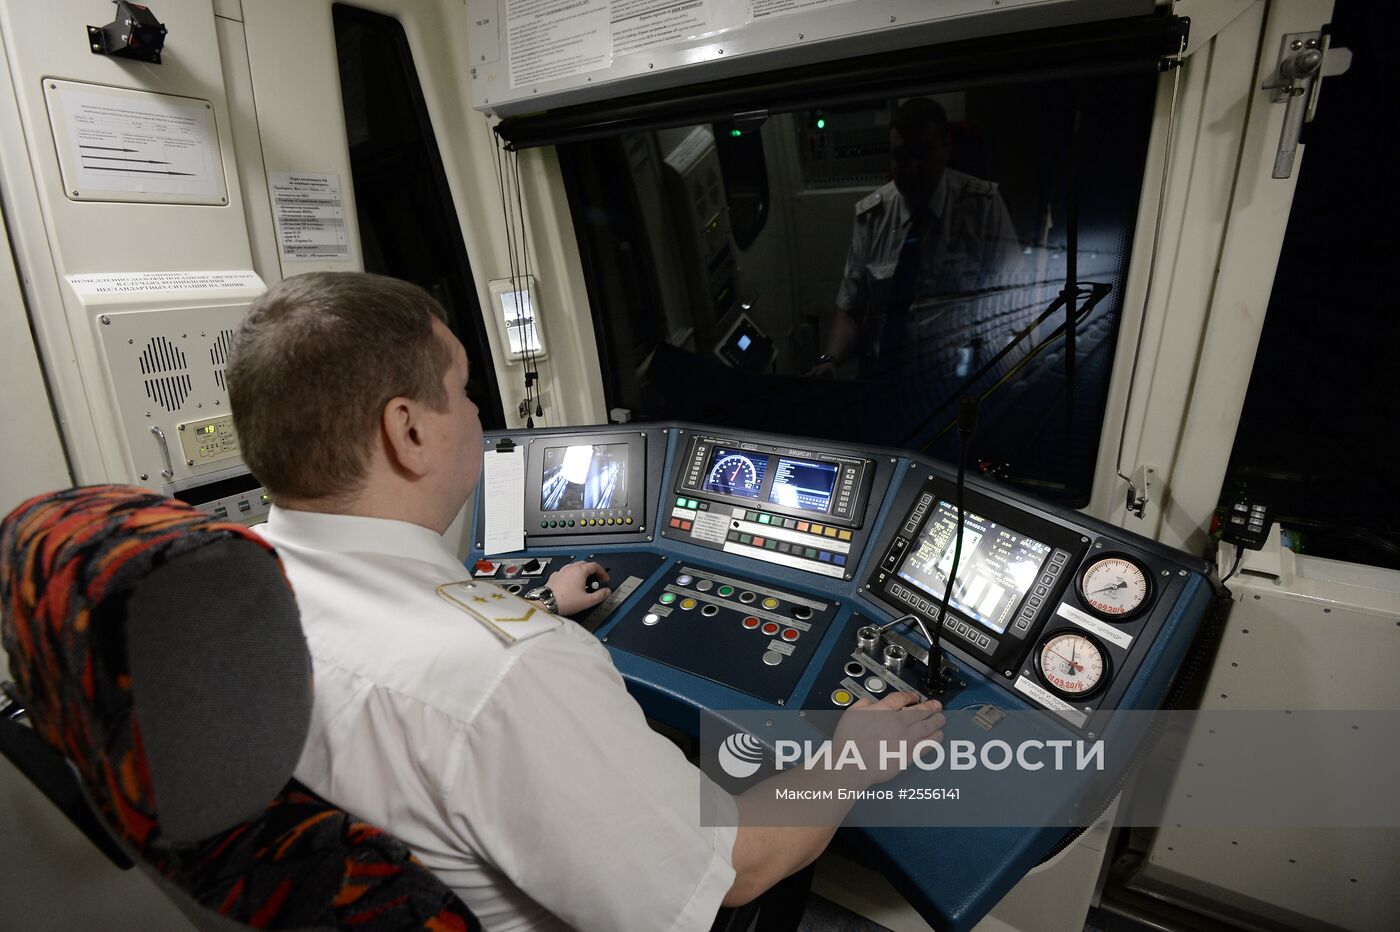 Презентация нового поезда Московского метрополитена